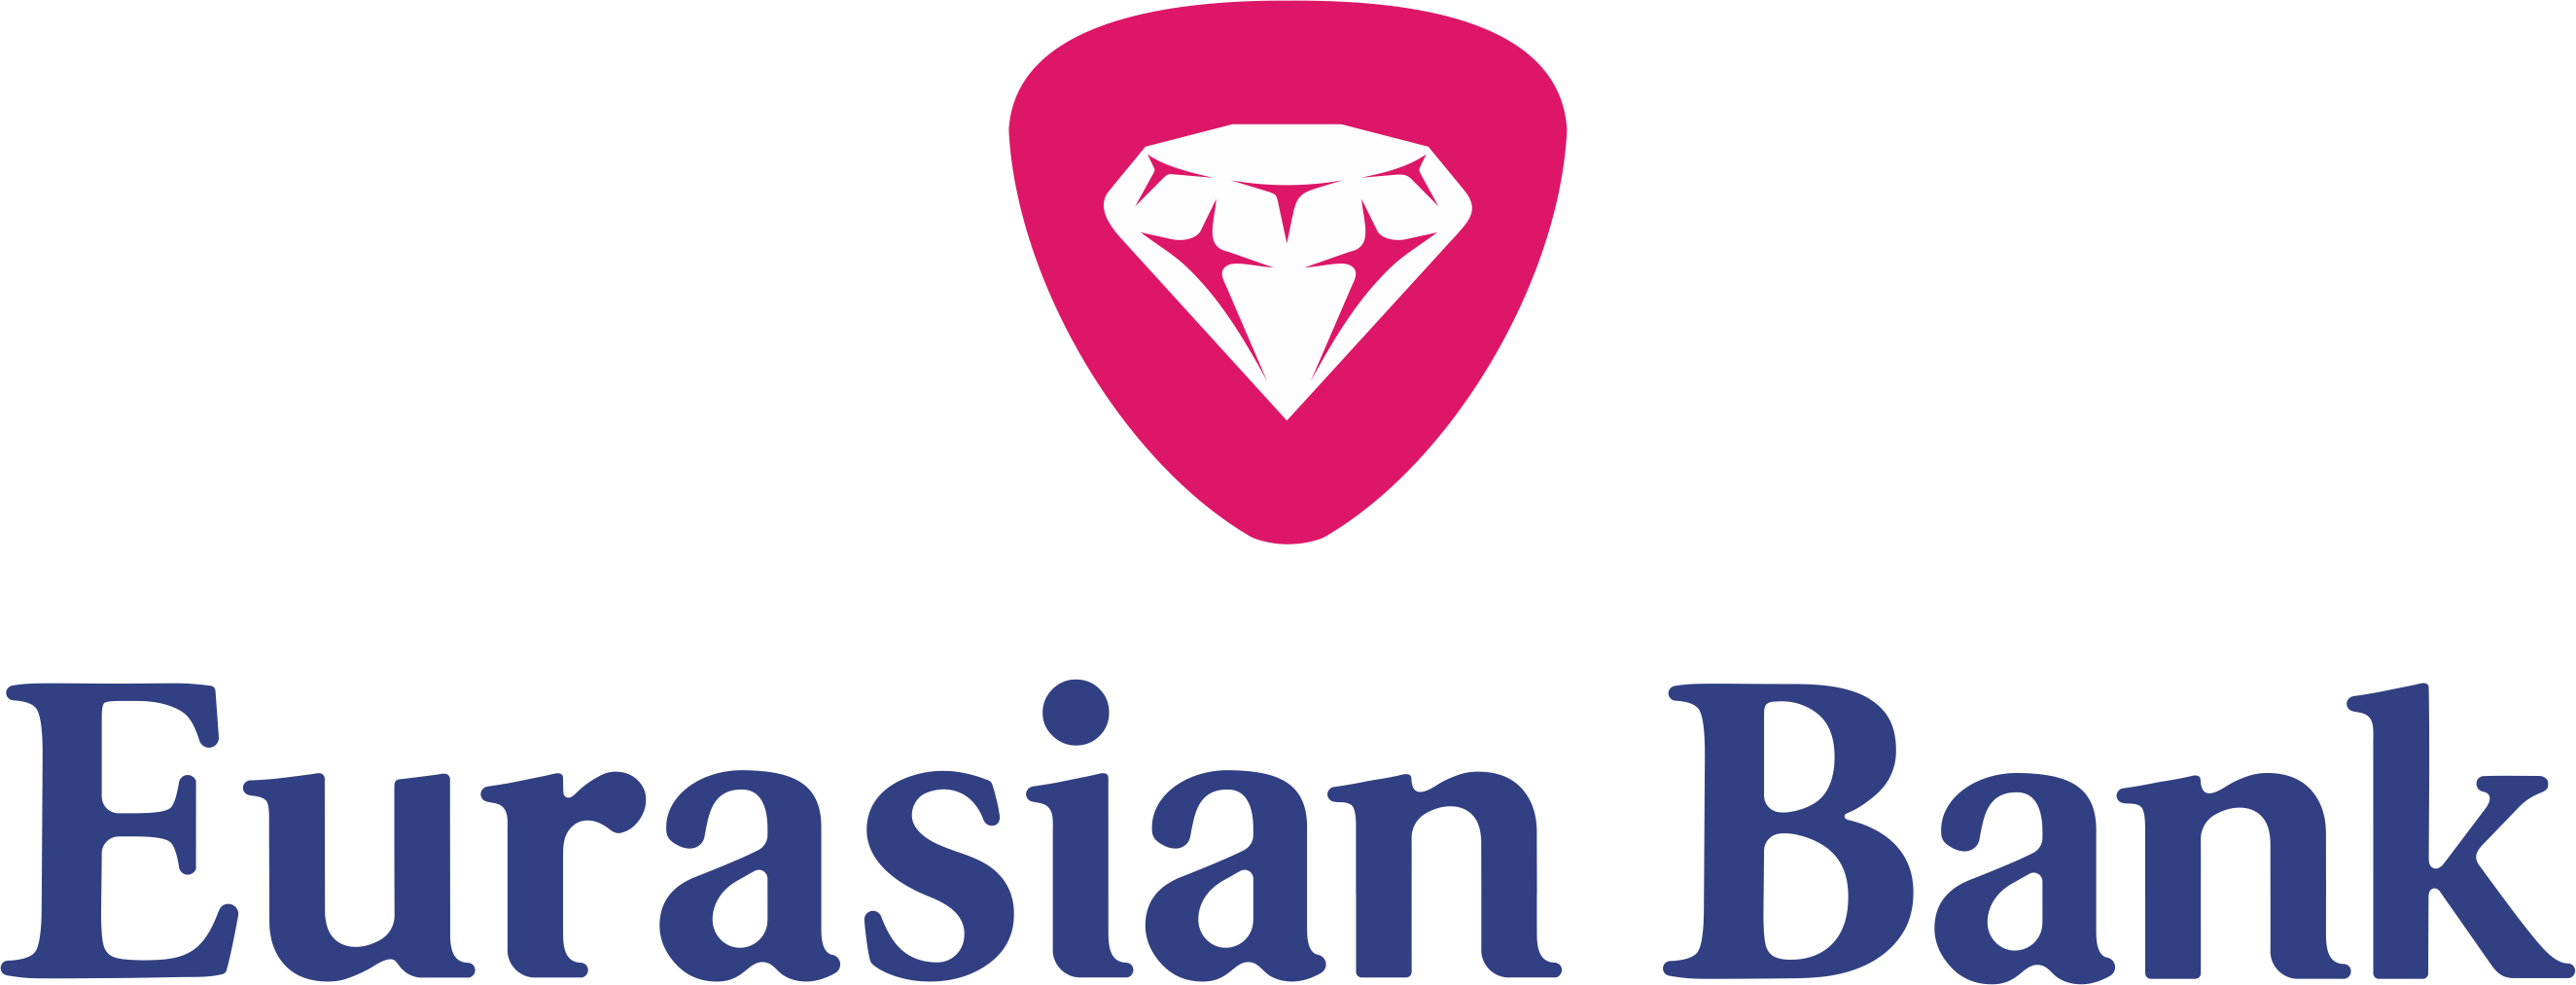 Банки евразия. Евразийский банк. Логотип Евразийского банка. Eurasian Bank лого. Евразийский банк Казахстан.